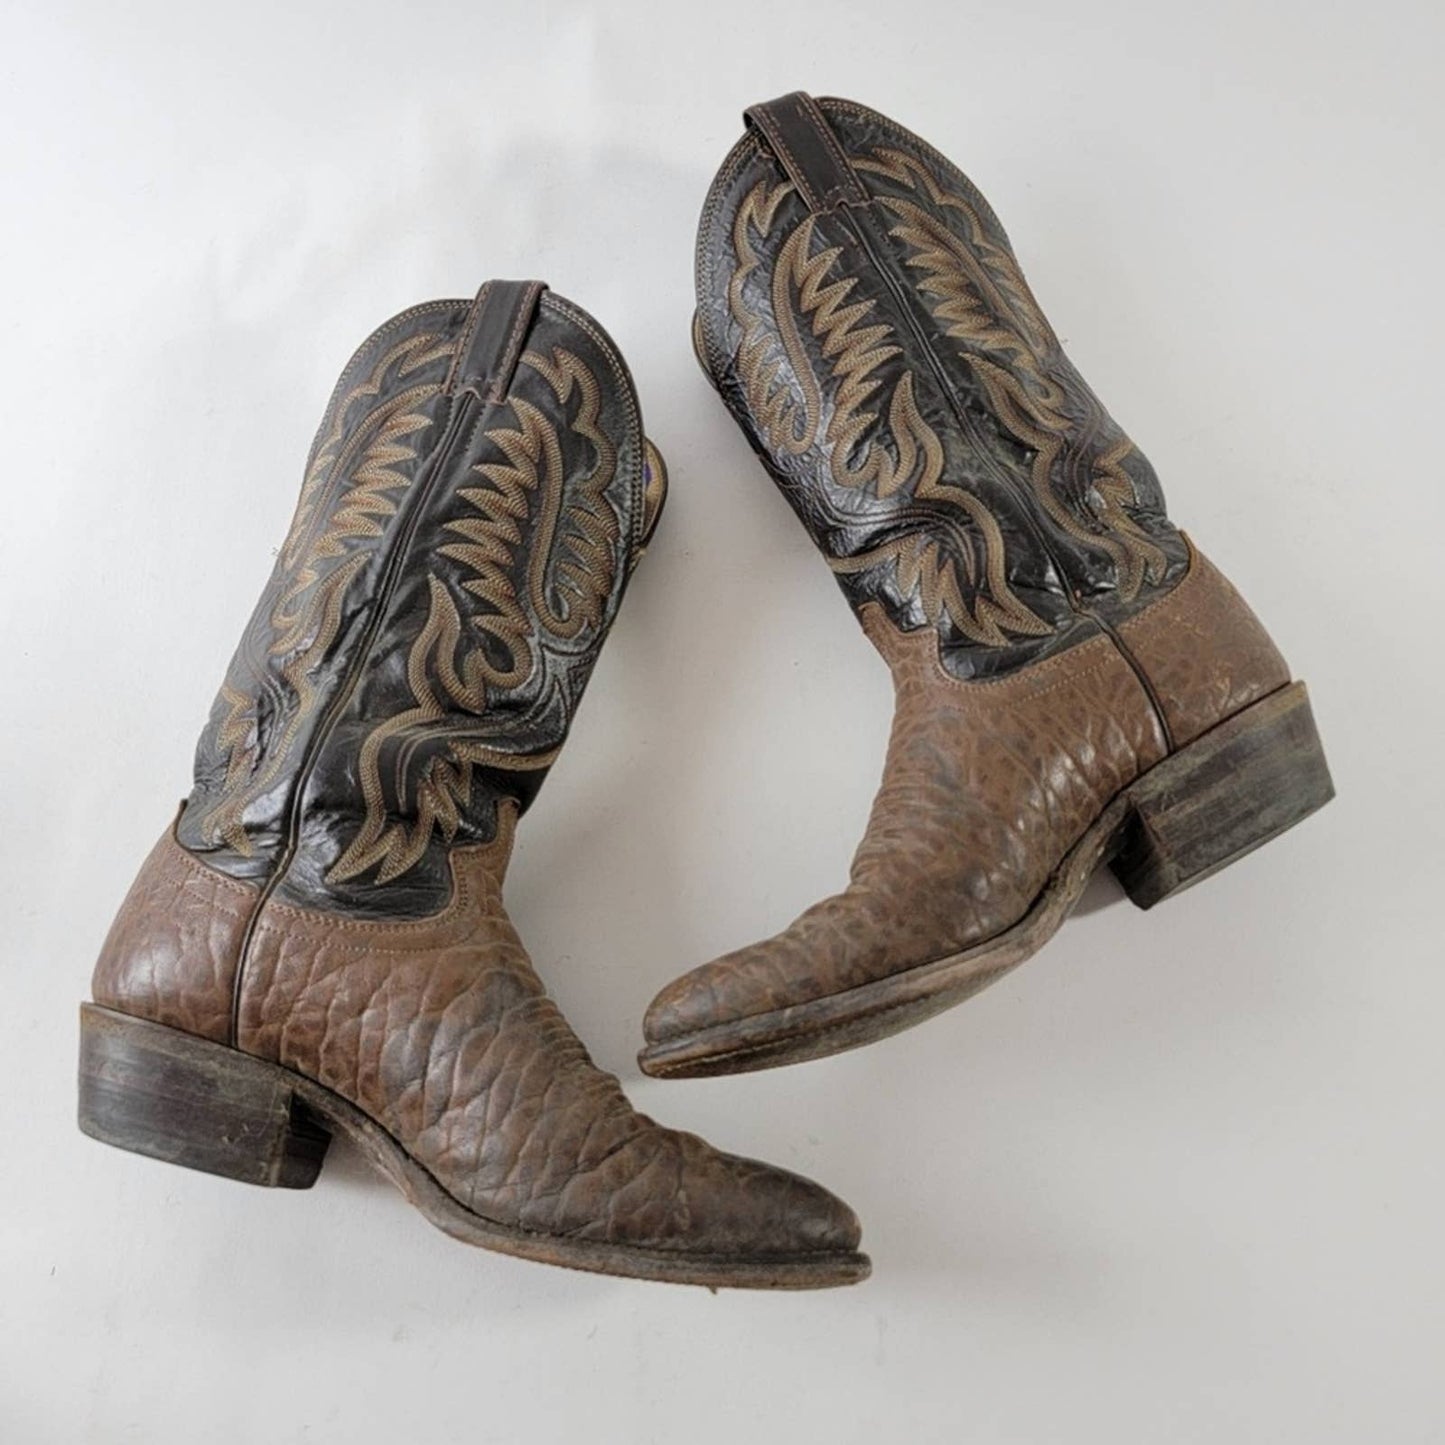 Justin Comb Last Point Toe Cowboy Boots - 8.5